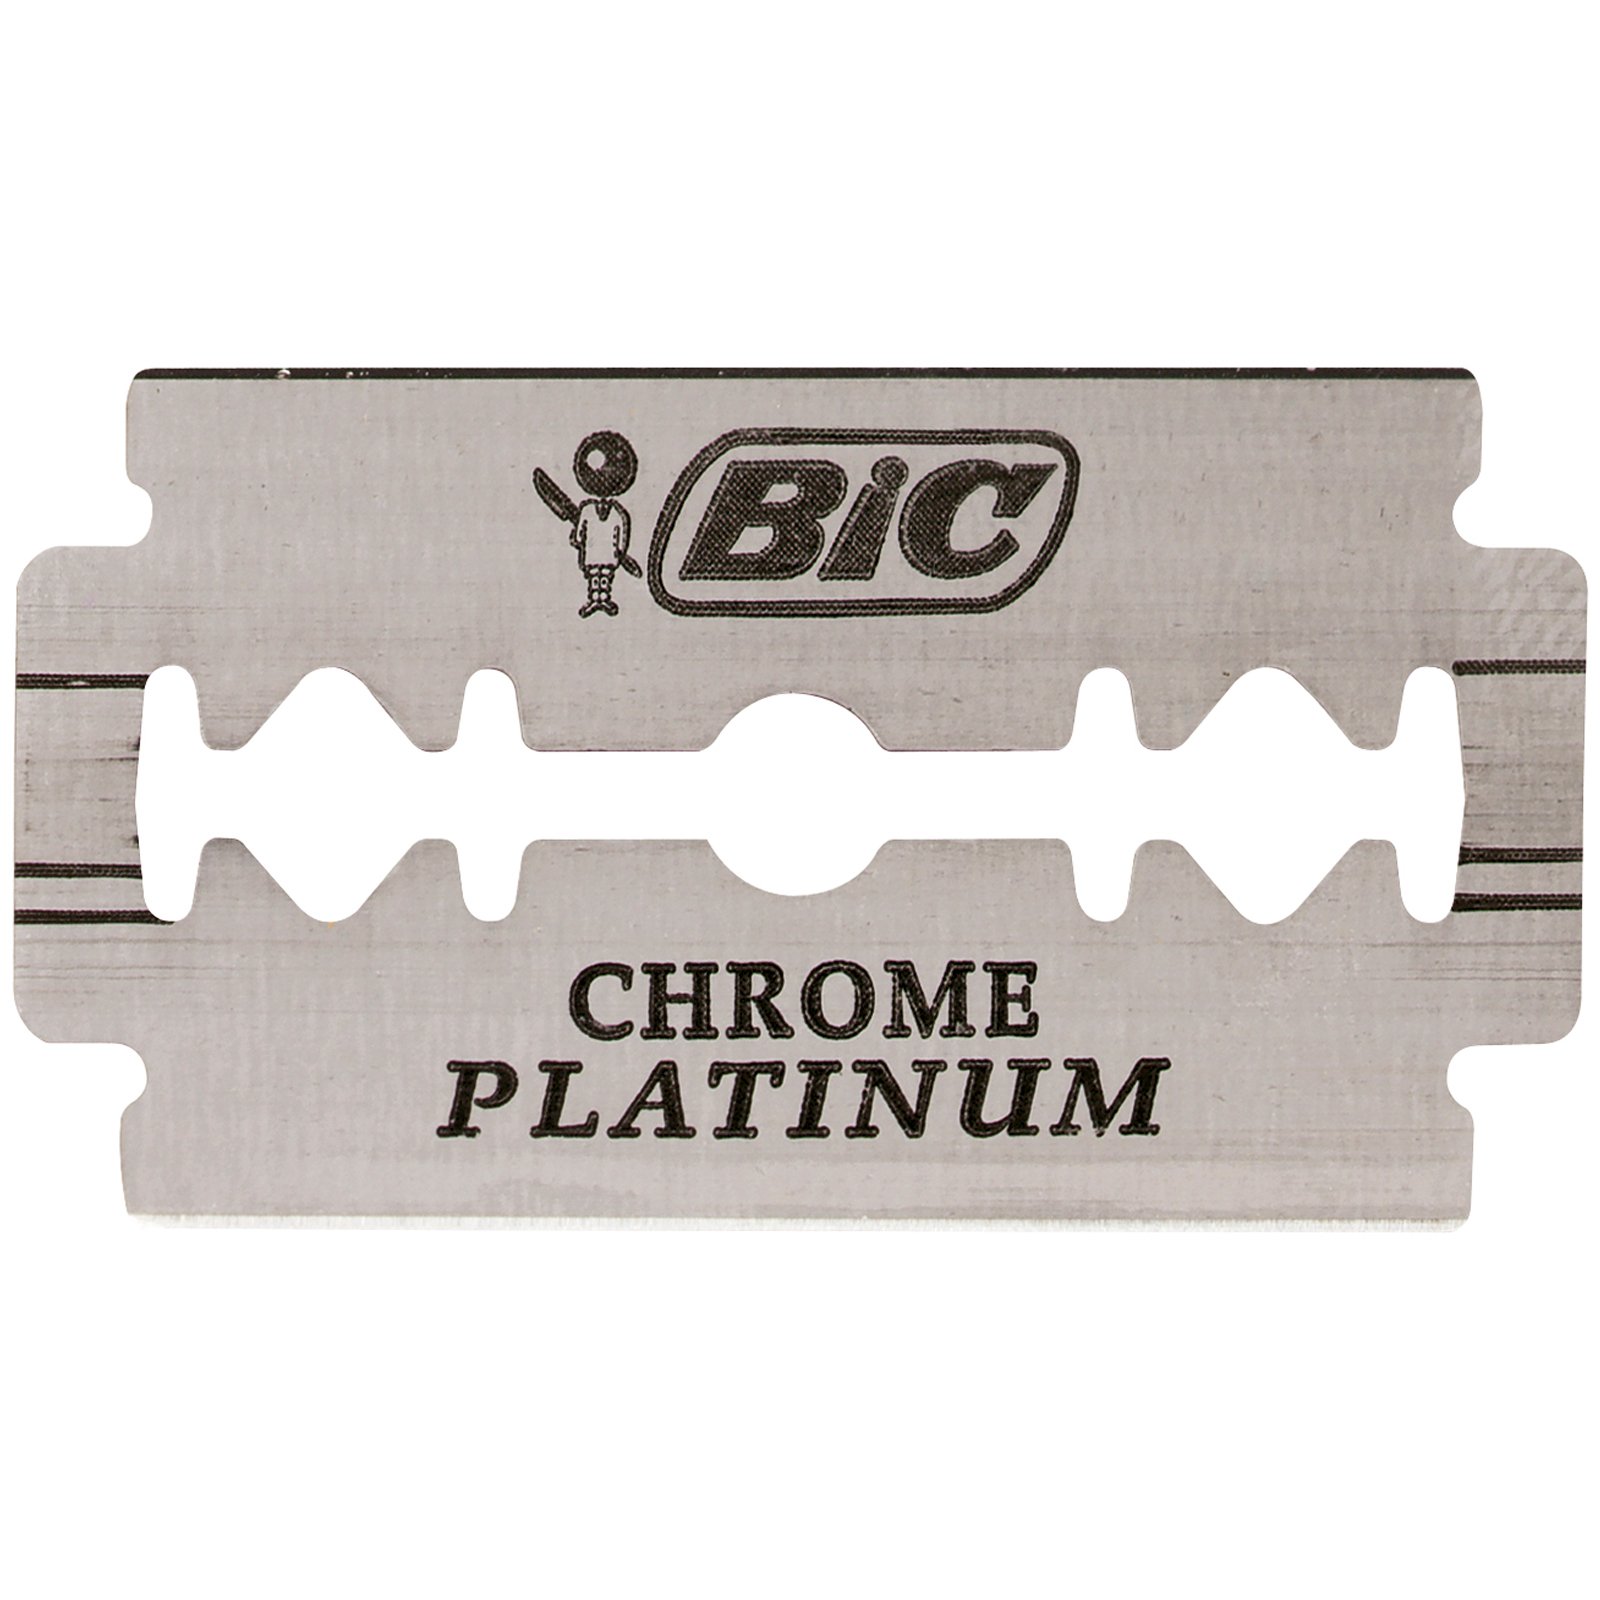 Сменные лезвия BIC Chrome Platinum, 20 уп. по 5 шт. (810923) - фото 3